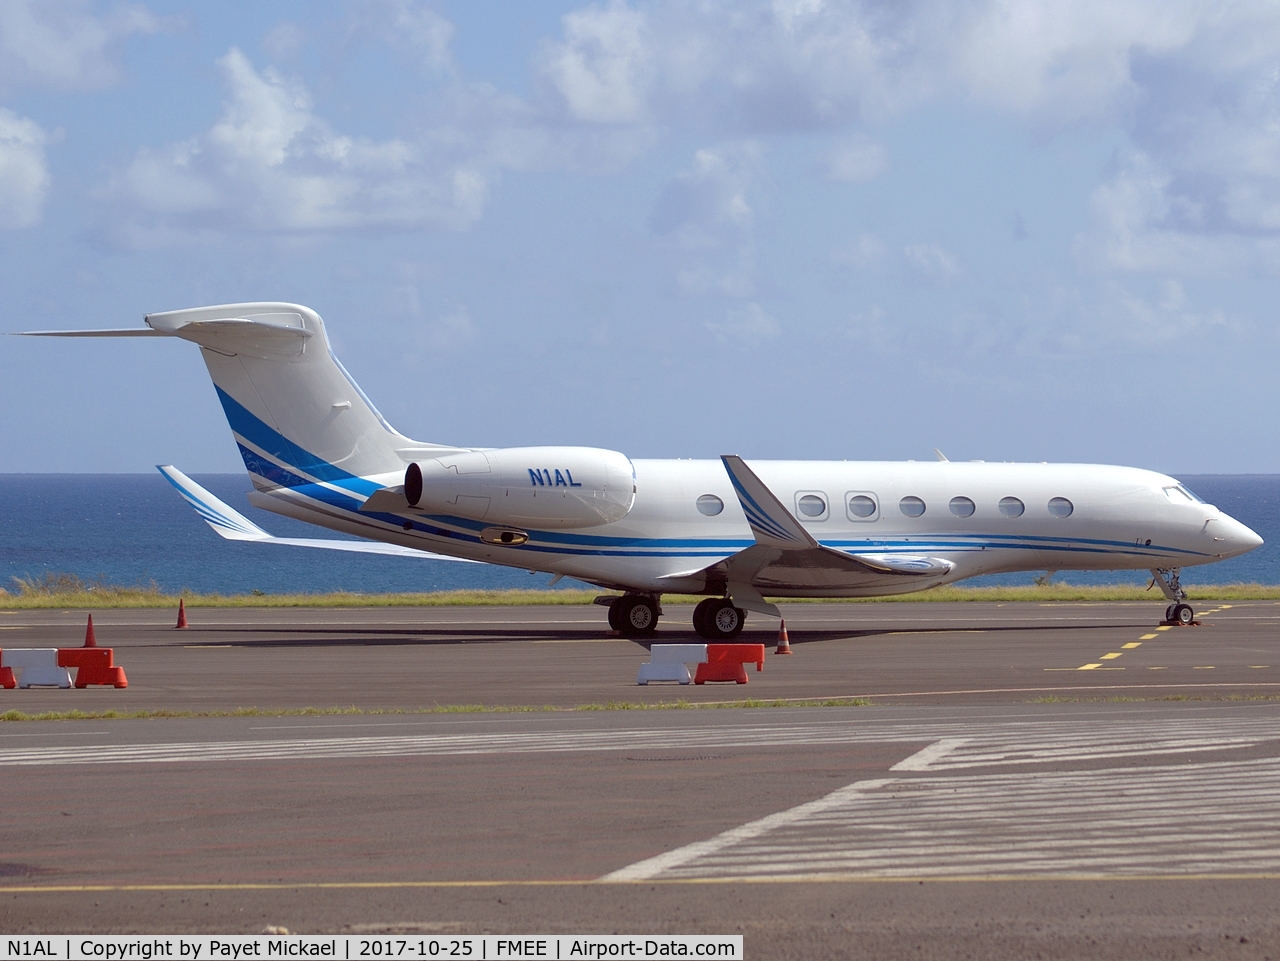 N1AL, 2014 Gulfstream Aerospace G650 (G-VI) C/N 6091, At stand 10